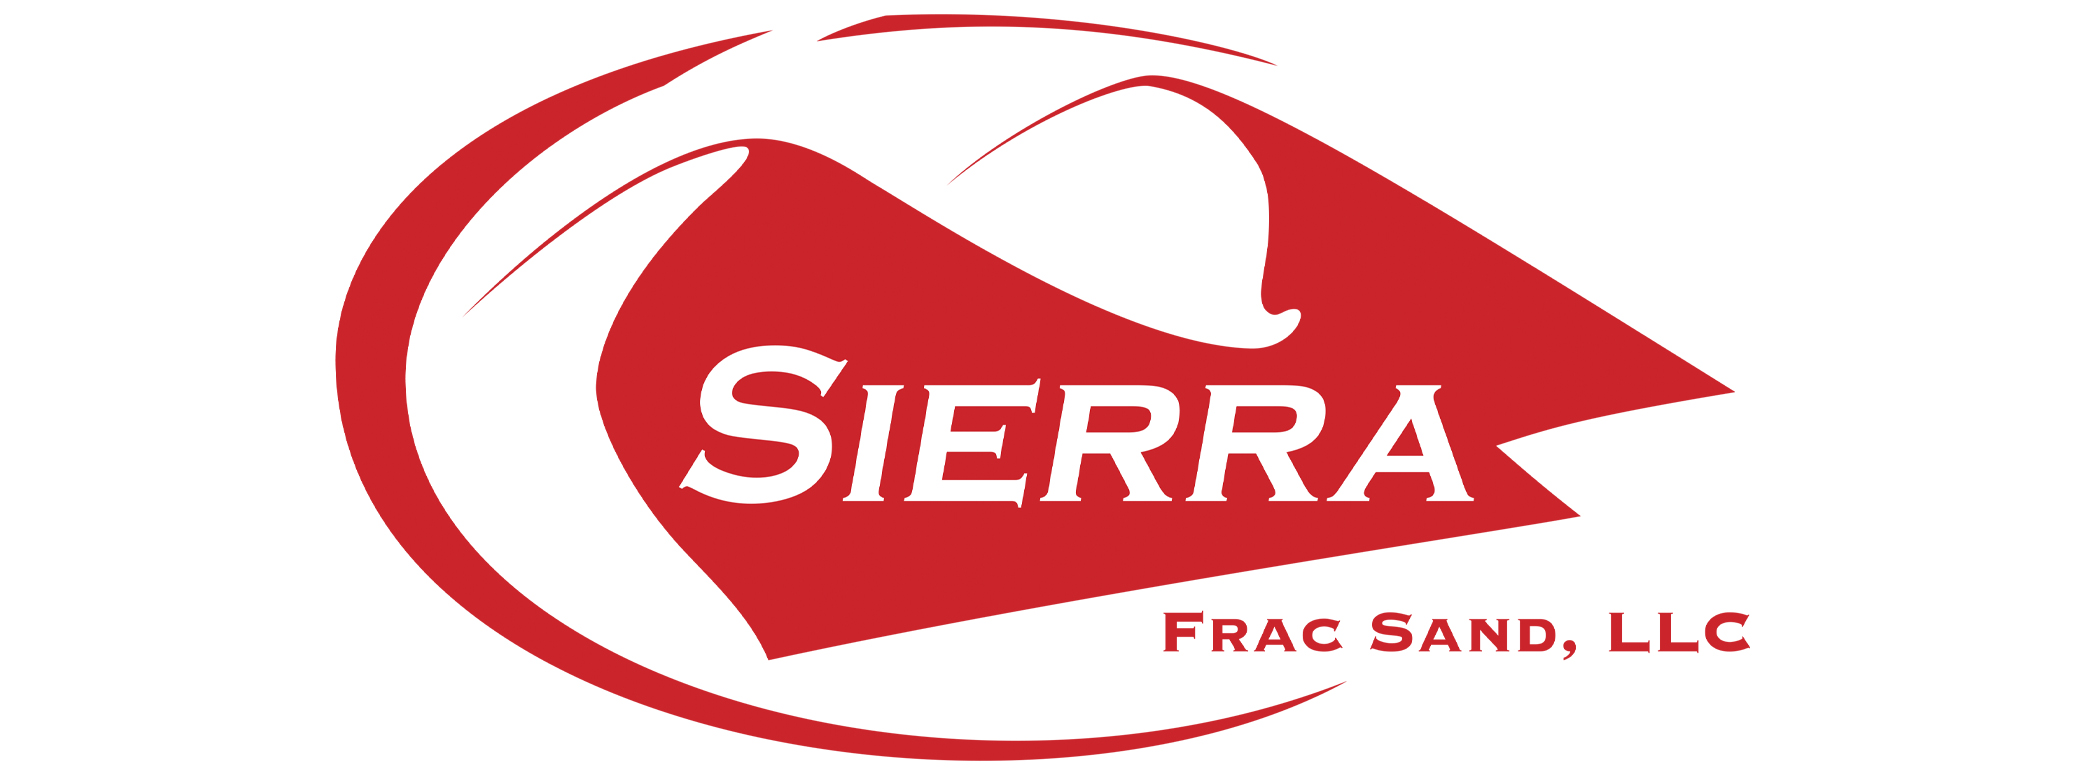 Sierra Frac